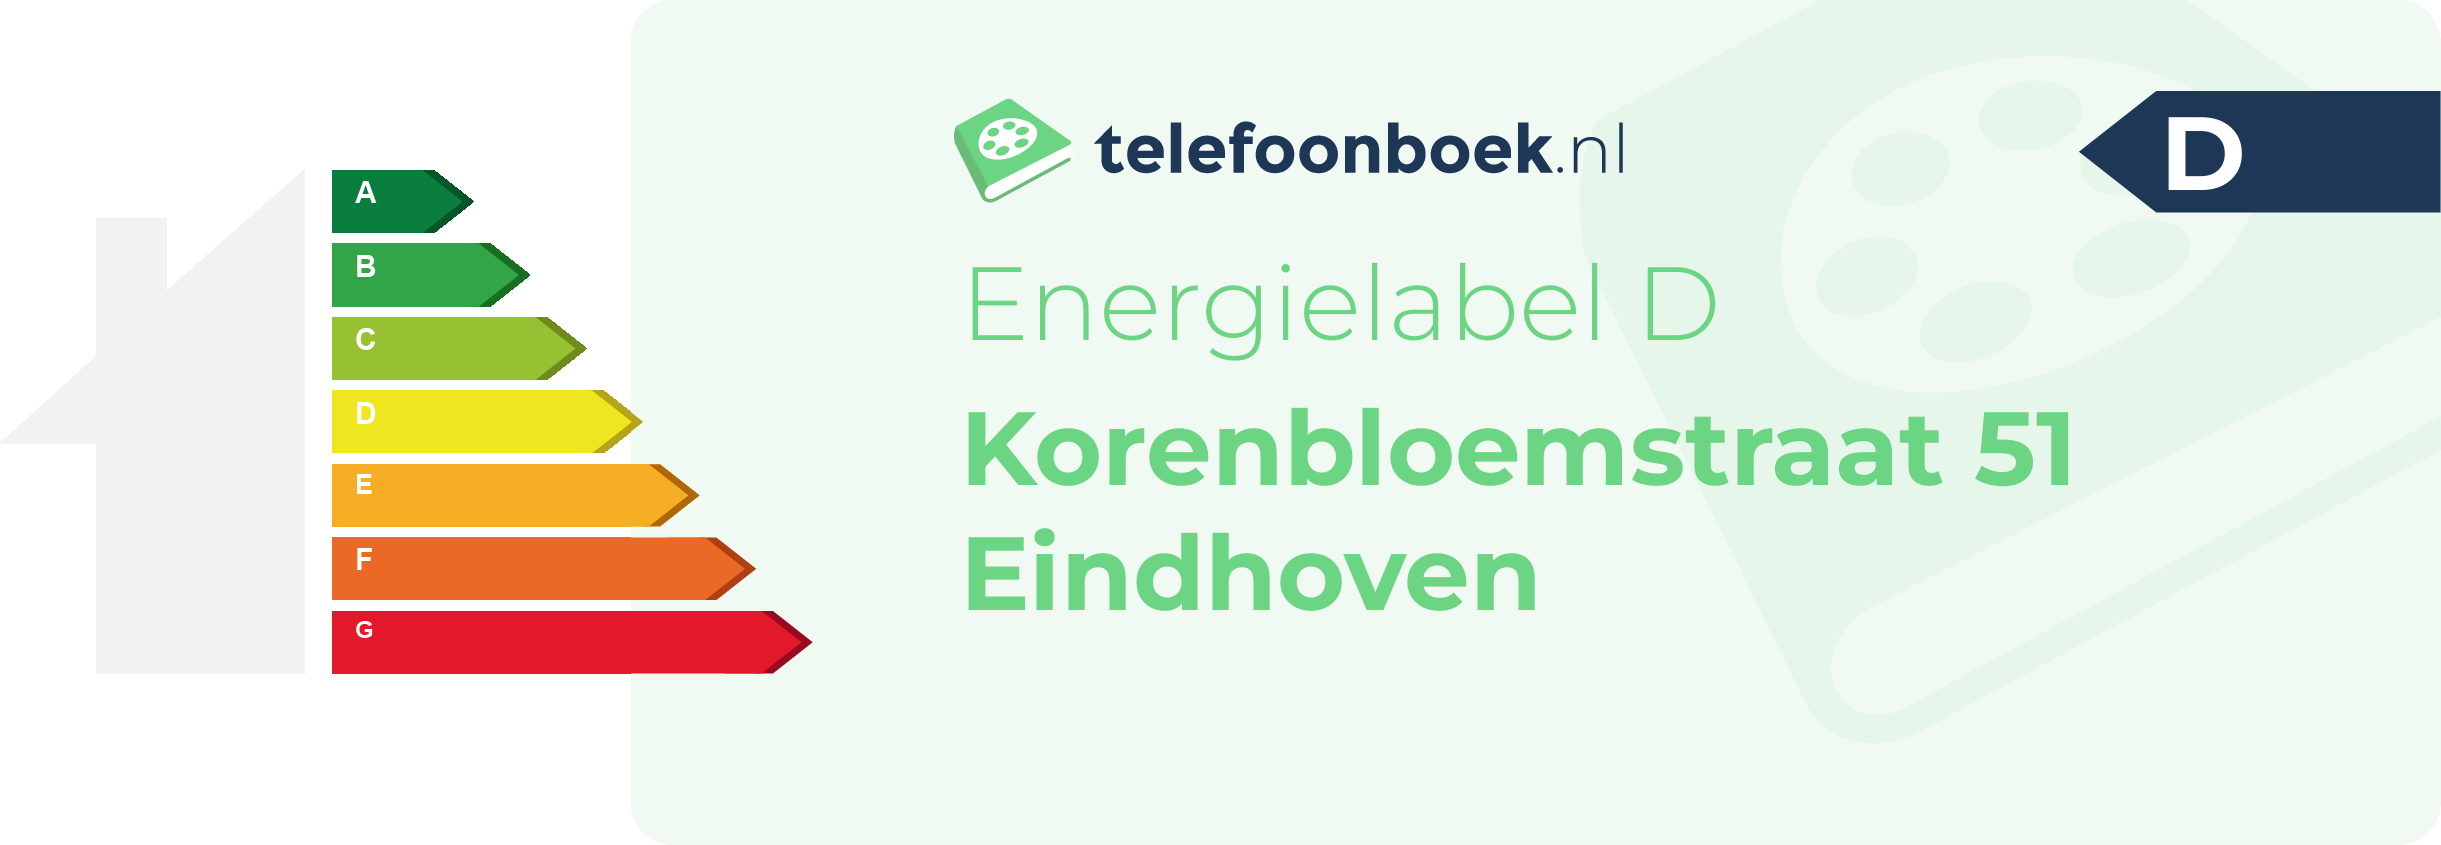 Energielabel Korenbloemstraat 51 Eindhoven